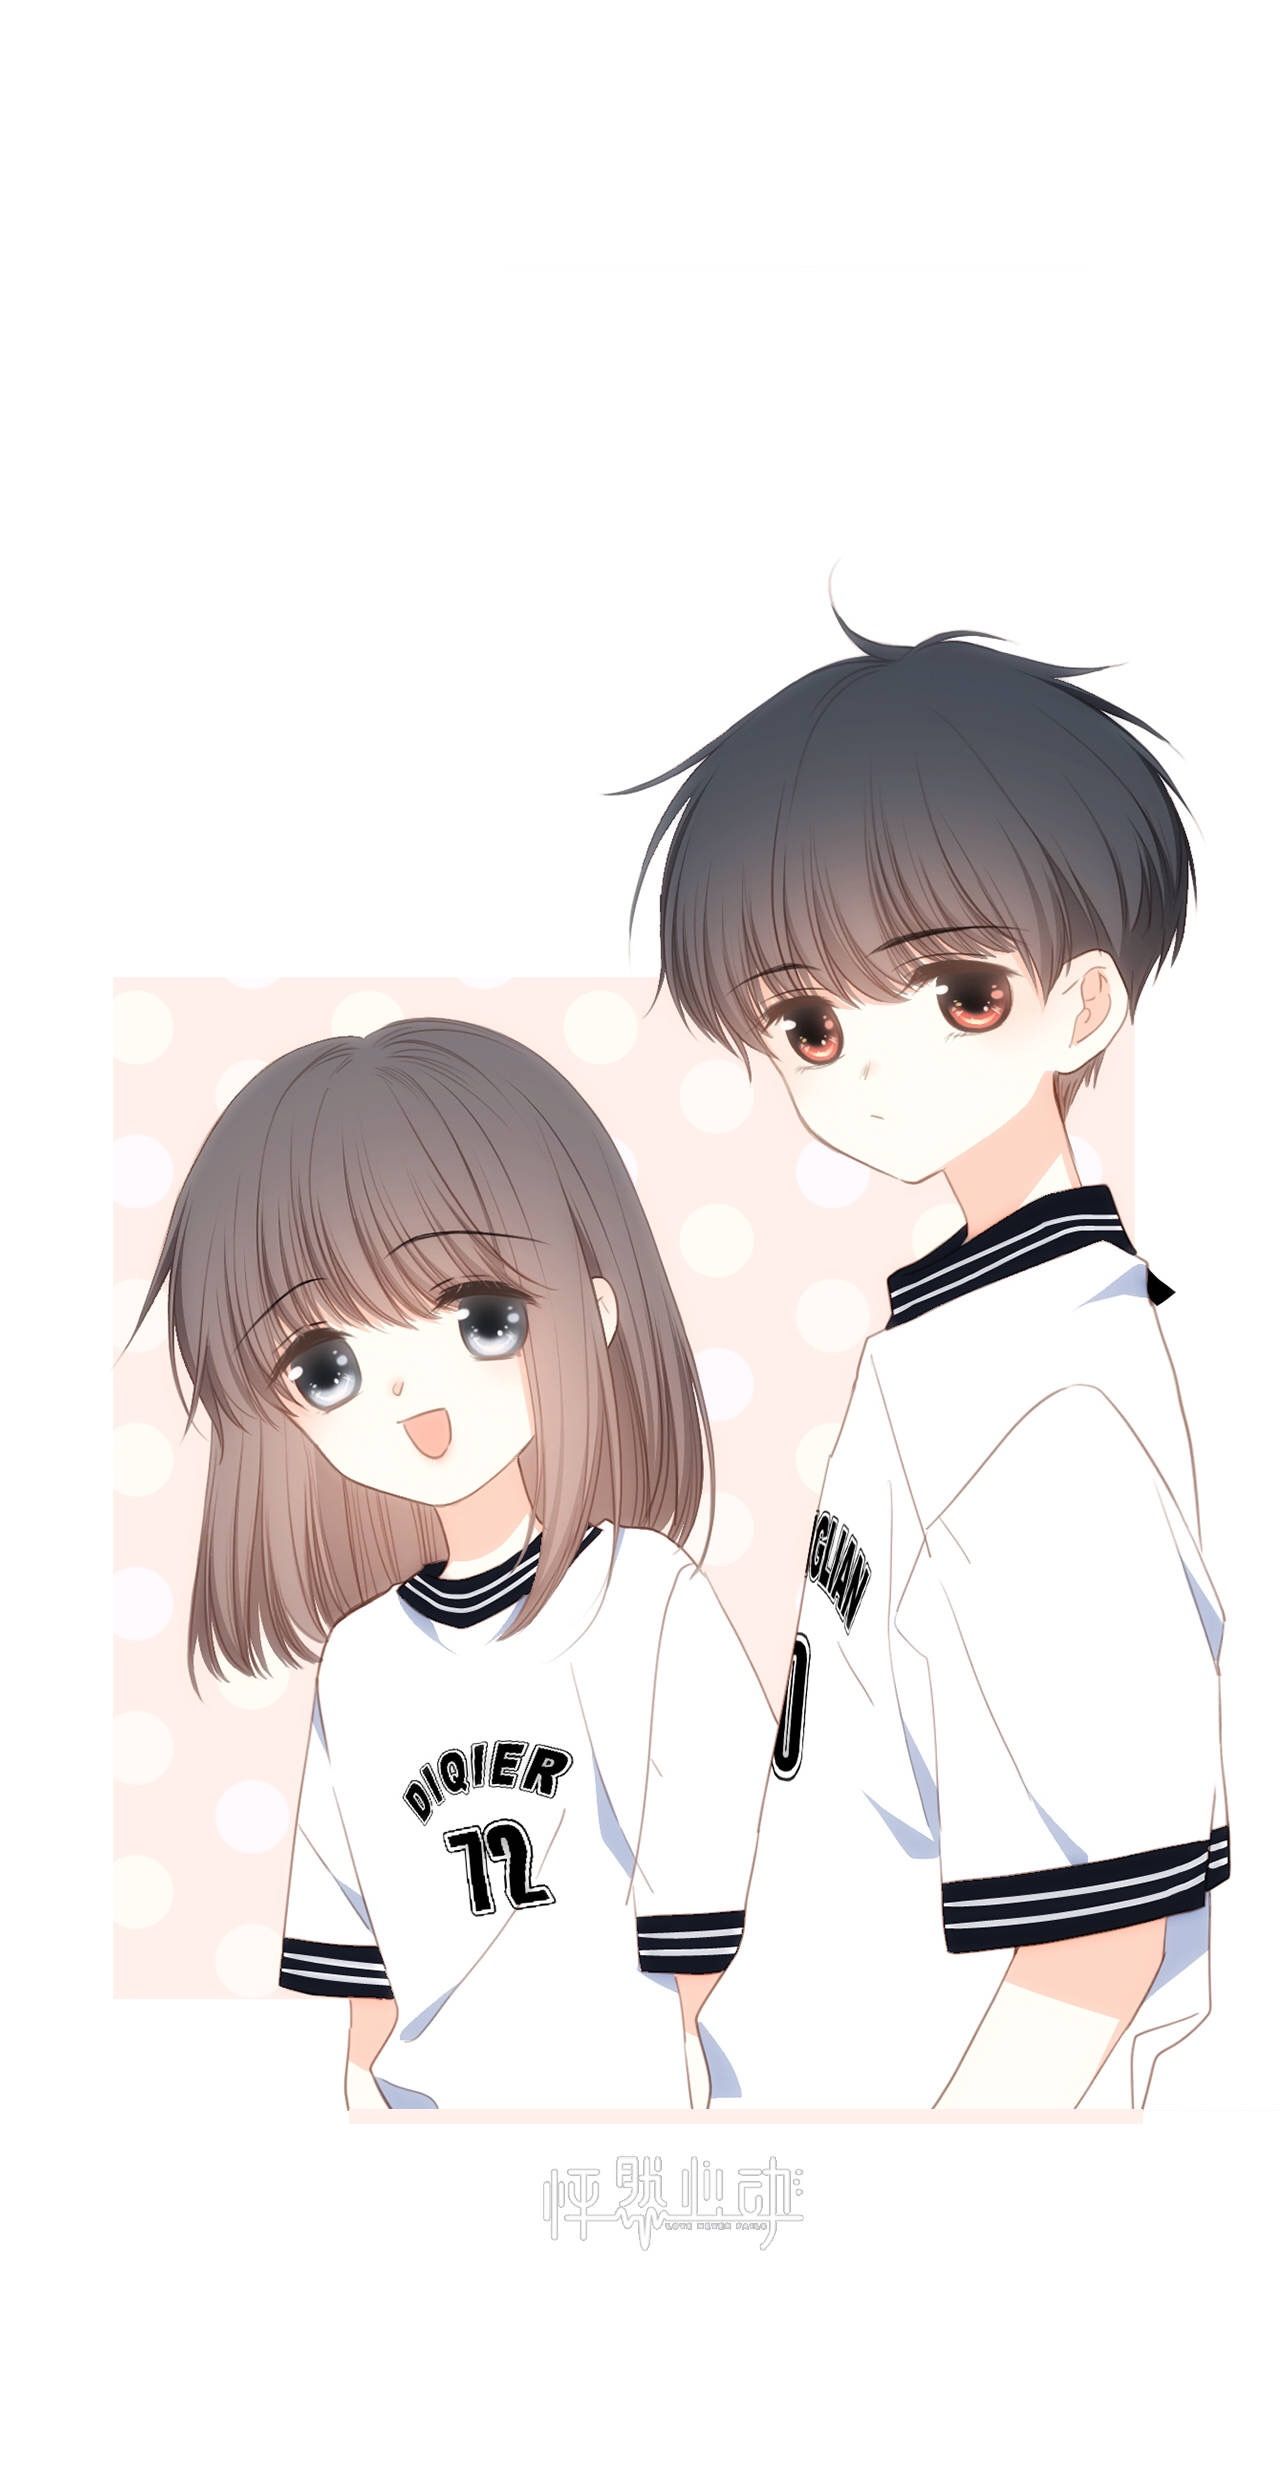 Anime đôi cute: Hãy cùng nhau đắm chìm trong thế giới tiểu thuyết với bức ảnh đôi anime cute này. Họ xứng đôi nhau như thế nào và lứa tình nhân này sẽ khiến bạn cảm thấy vô cùng tự hào và mãn nhãn.